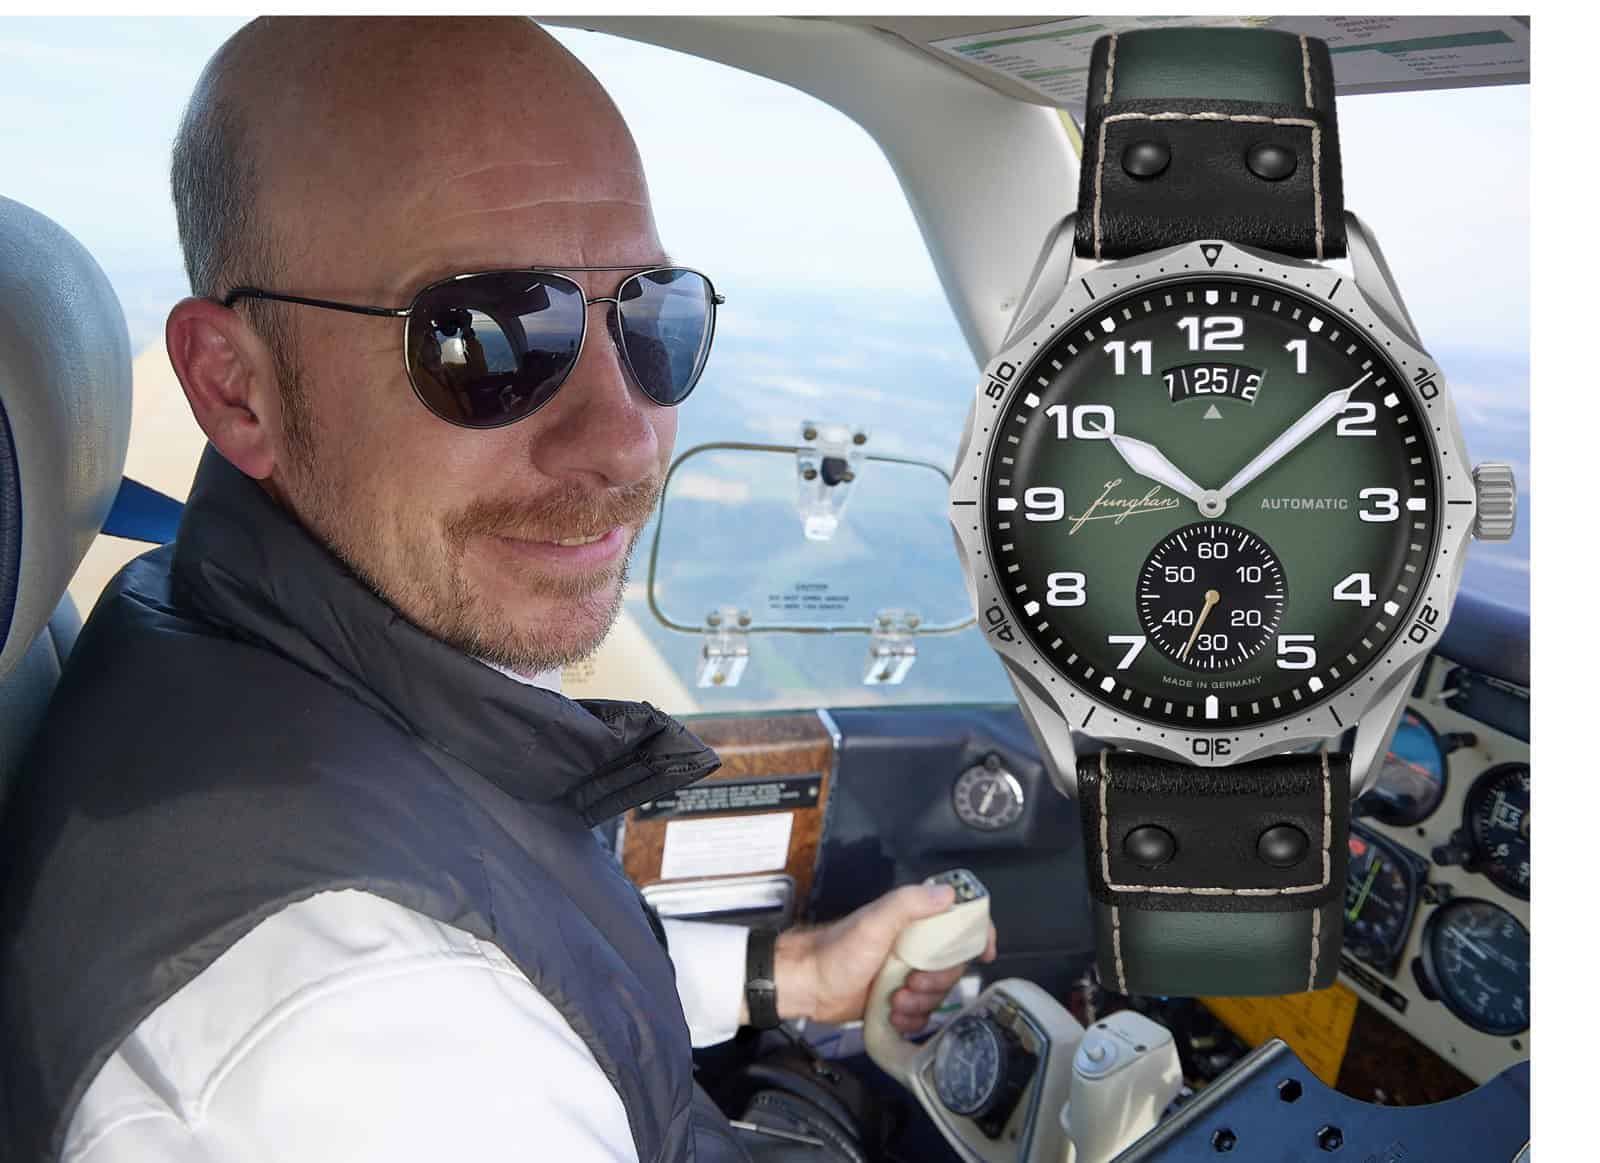 Junghans CEO Hannes Steim im Cockpit und Junghans Pilot Automatic 27-4495.00